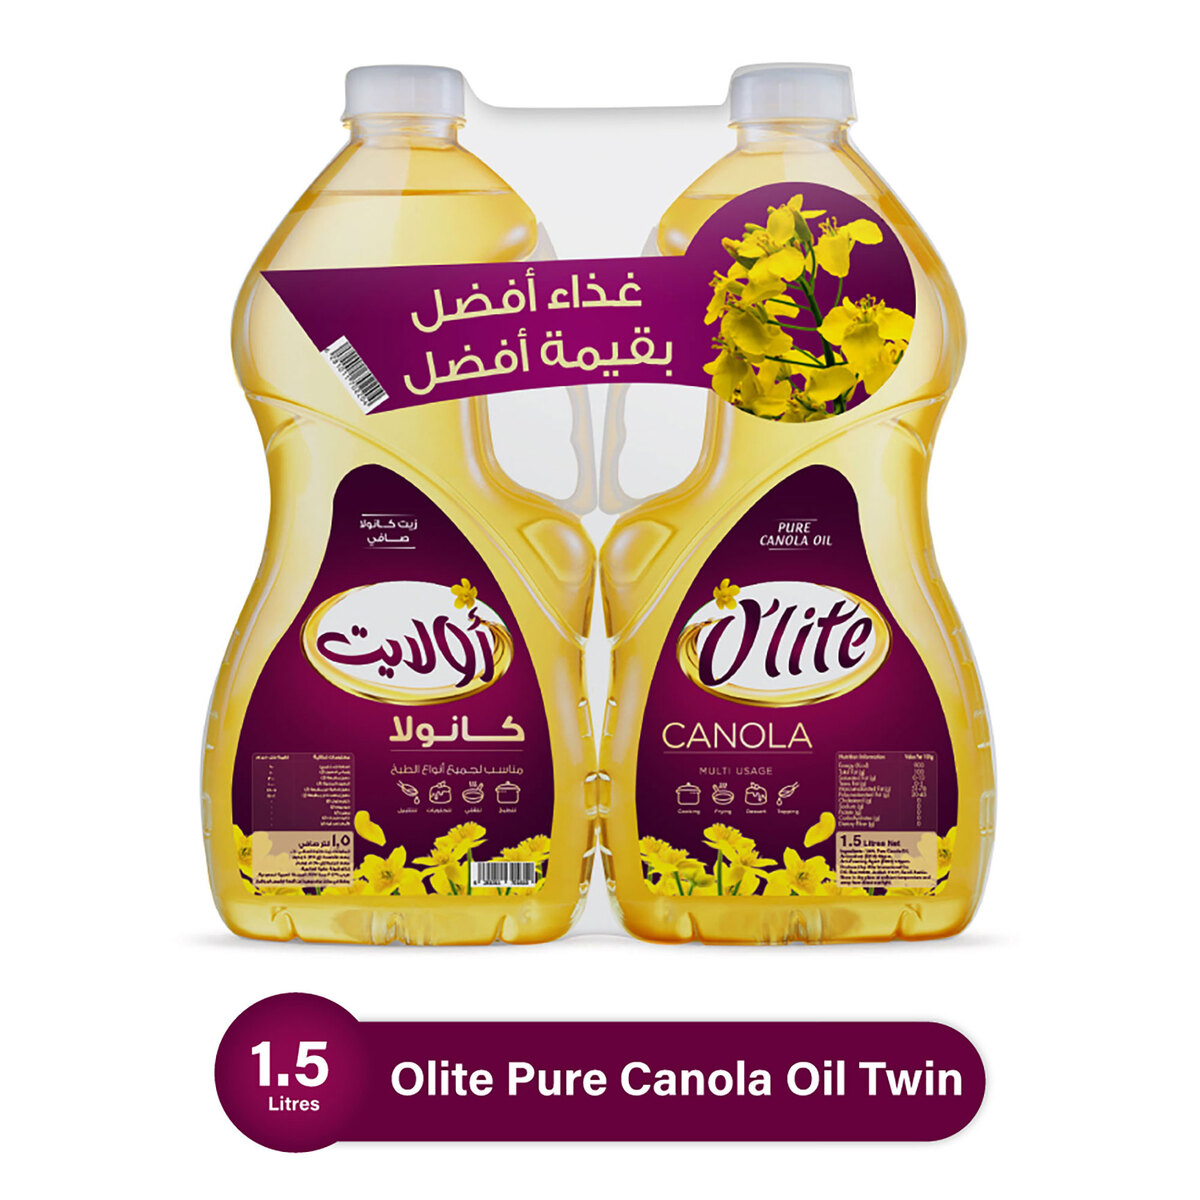 اشتري قم بشراء أولايت زيت الكانولا النقي عرض توفير 2 × 1.5 لتر Online at Best Price من الموقع - من لولو هايبر ماركت Canola Oil في السعودية